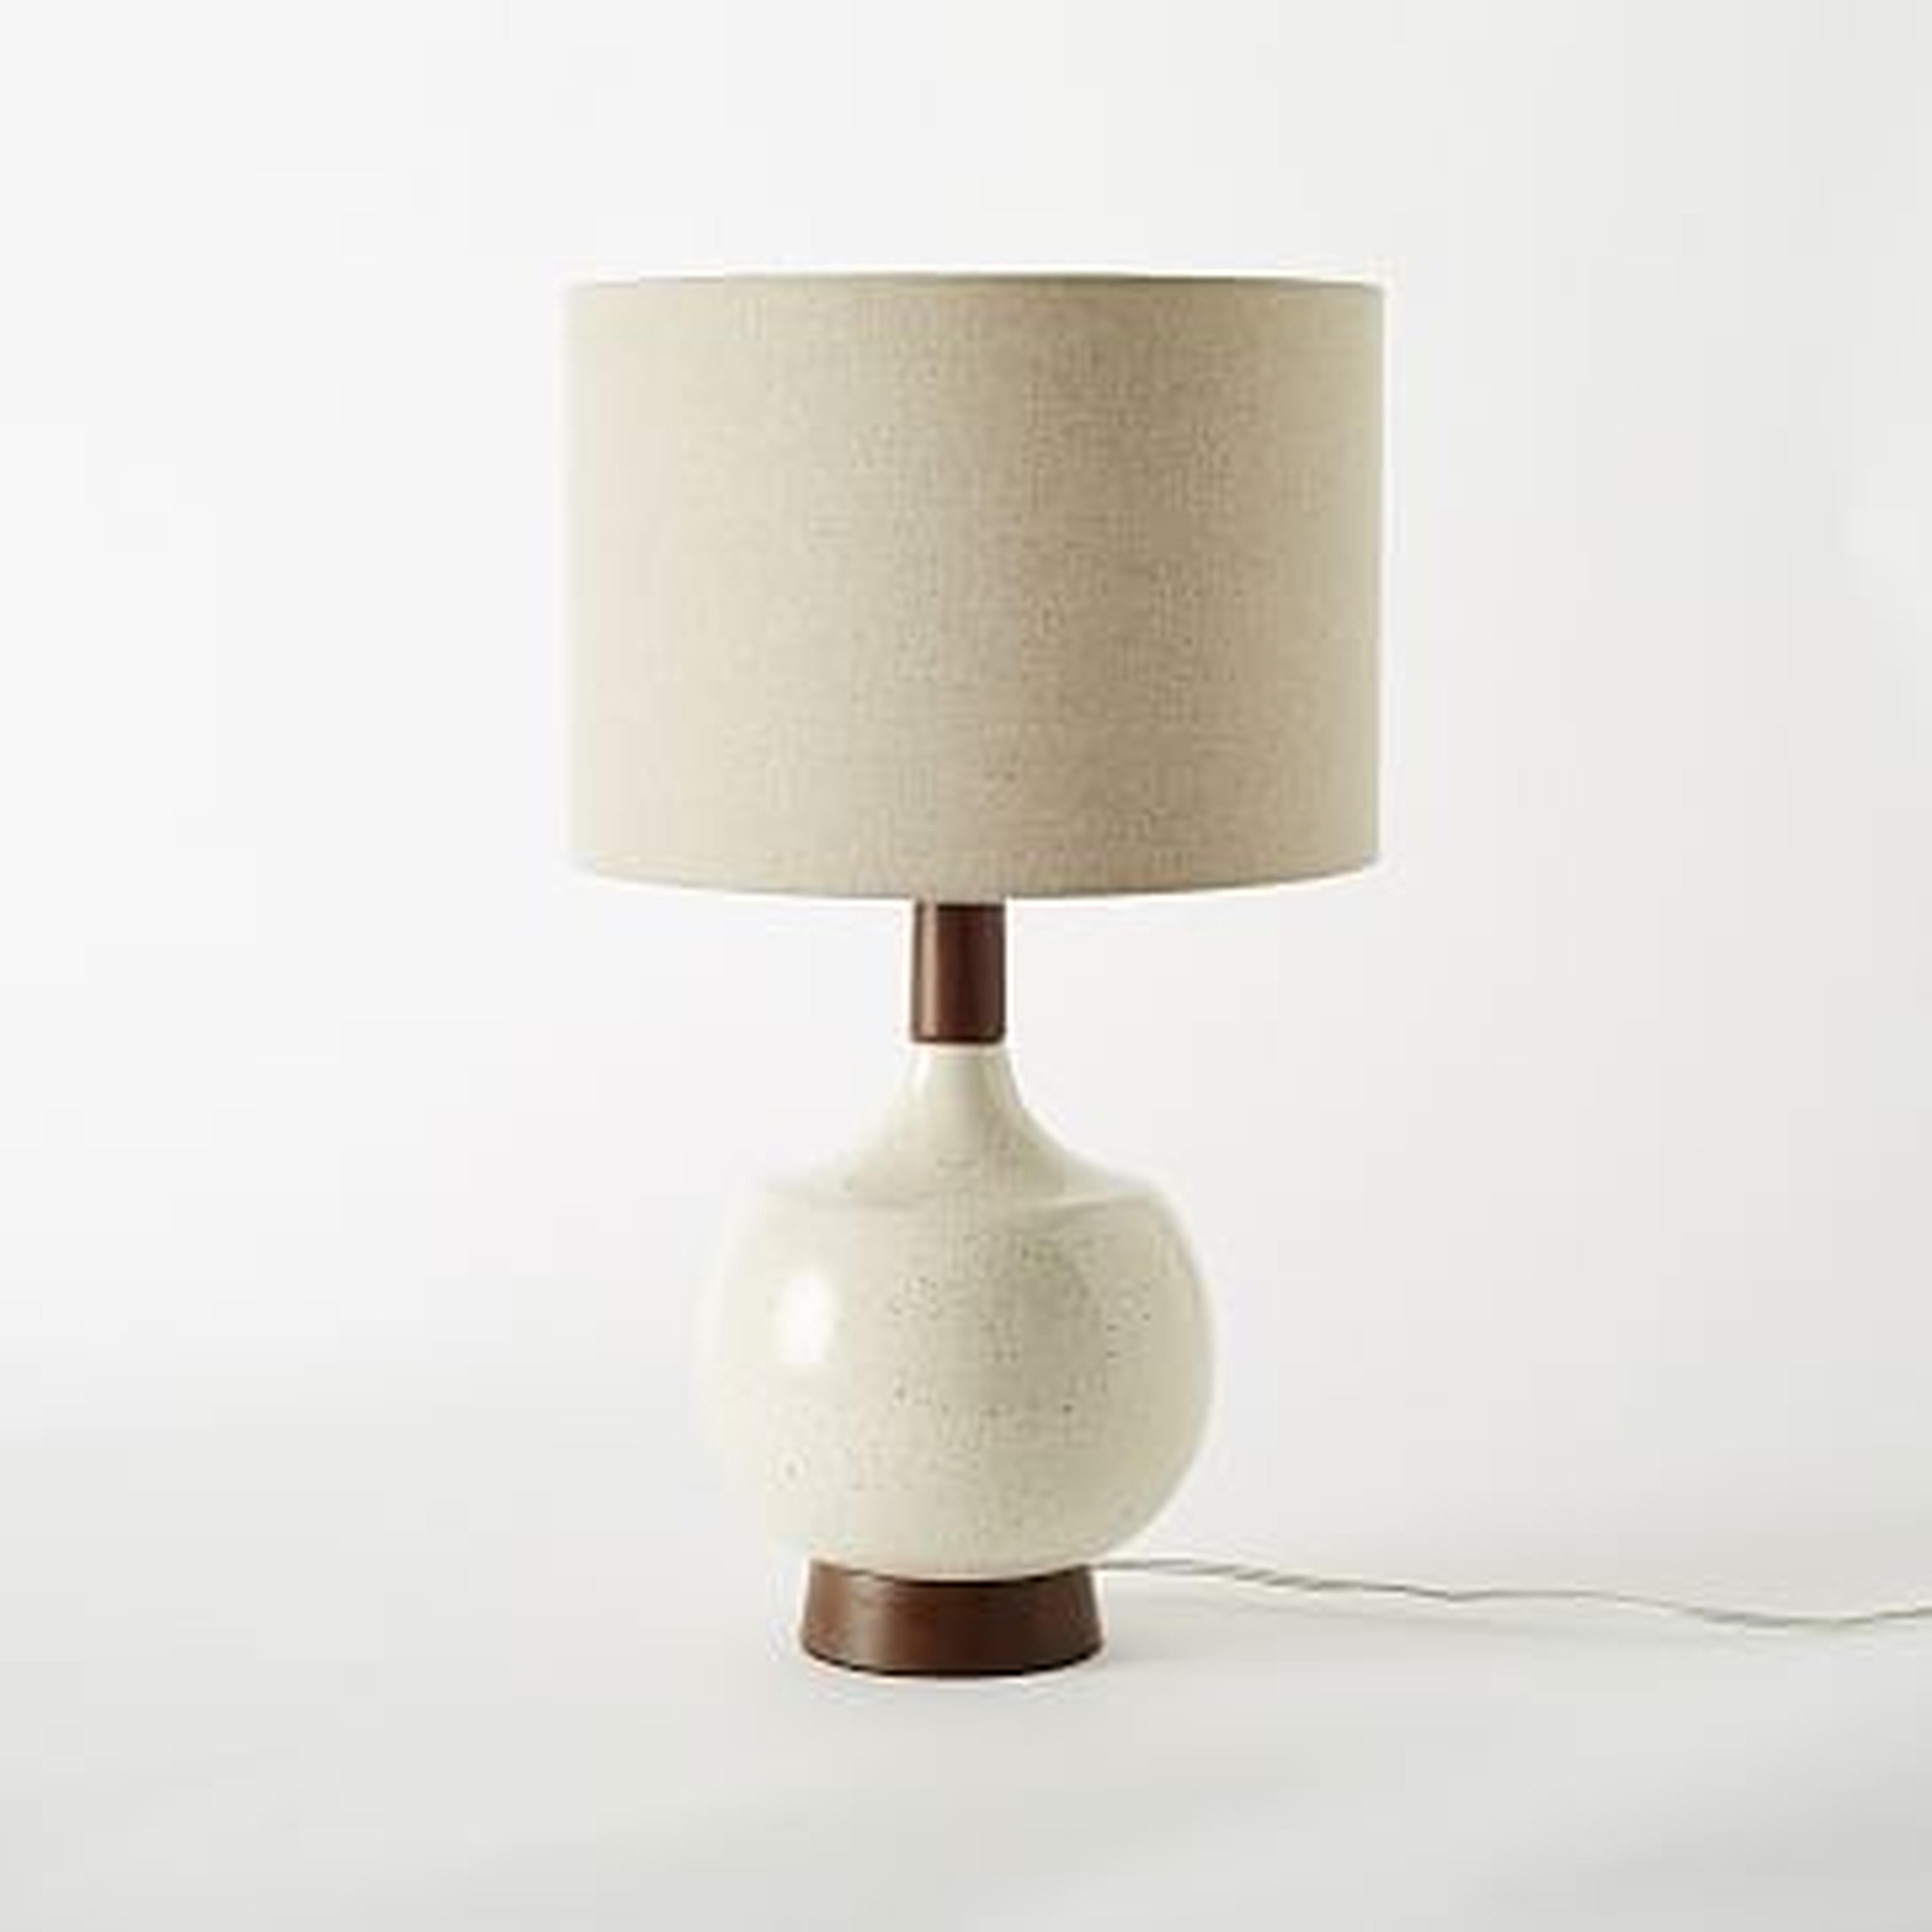 Modernist Table Lamp, Egg White/Natural - West Elm